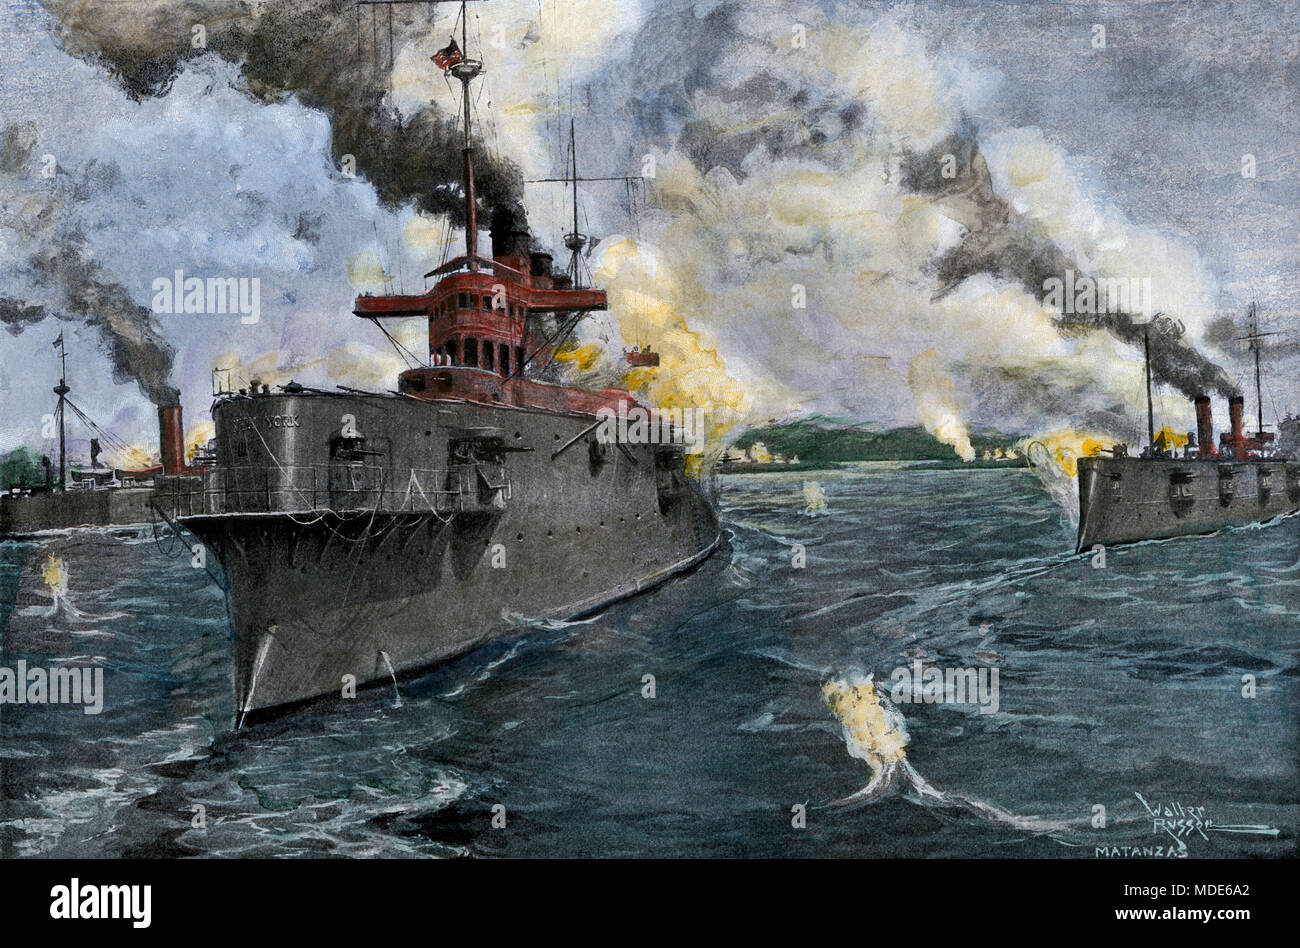 US Naval Bombardierung von Matanzas, Cuba, während des Spanisch-Amerikanischen Krieges, 1898. Handcolorierte halftone einer Abbildung Stockfoto